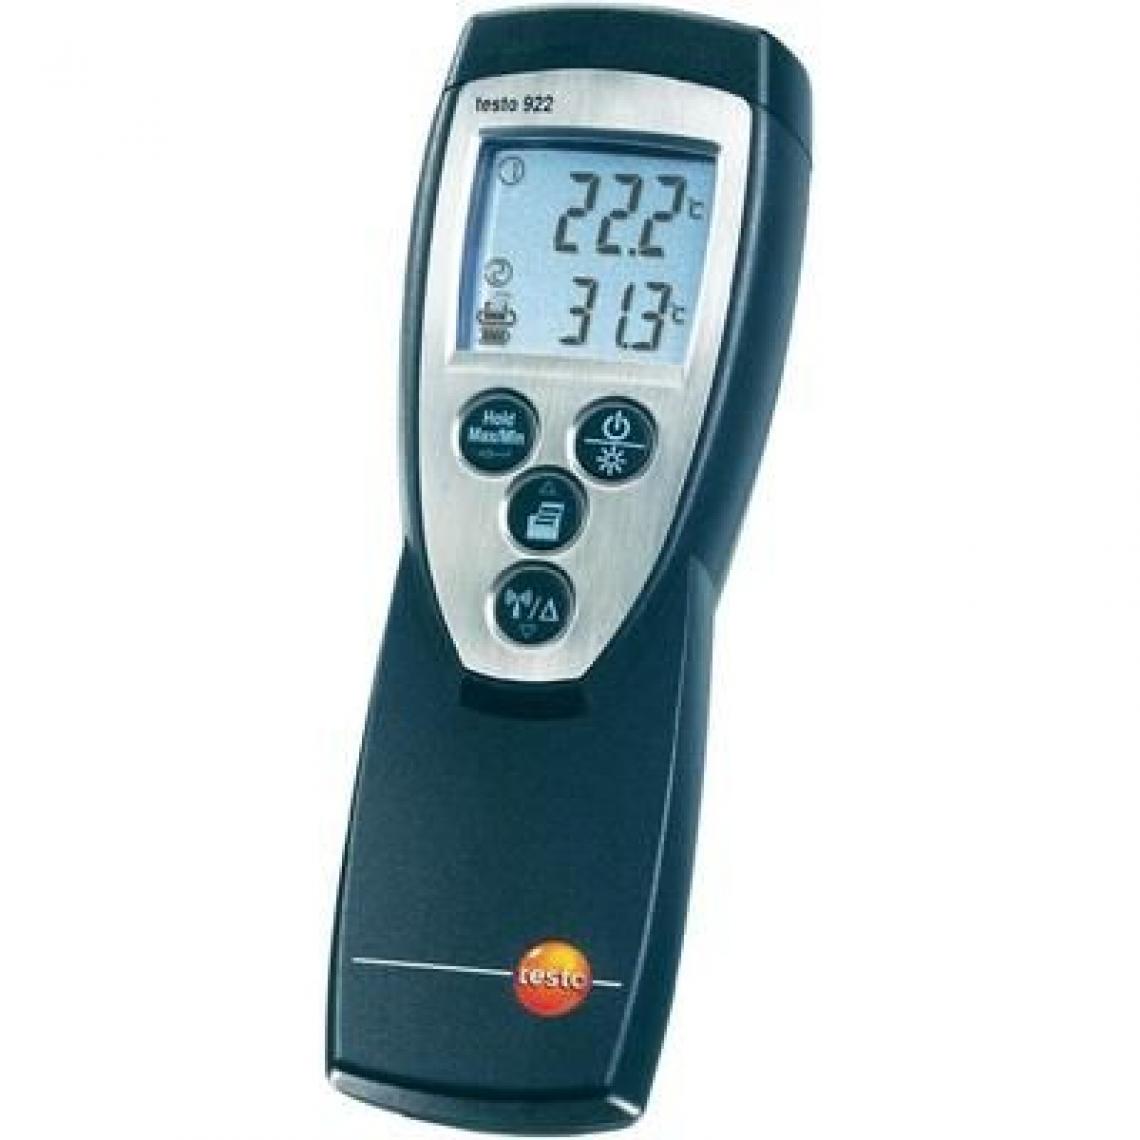 Testo - Thermomètre différentiel testo 922 - Thermomètre connecté